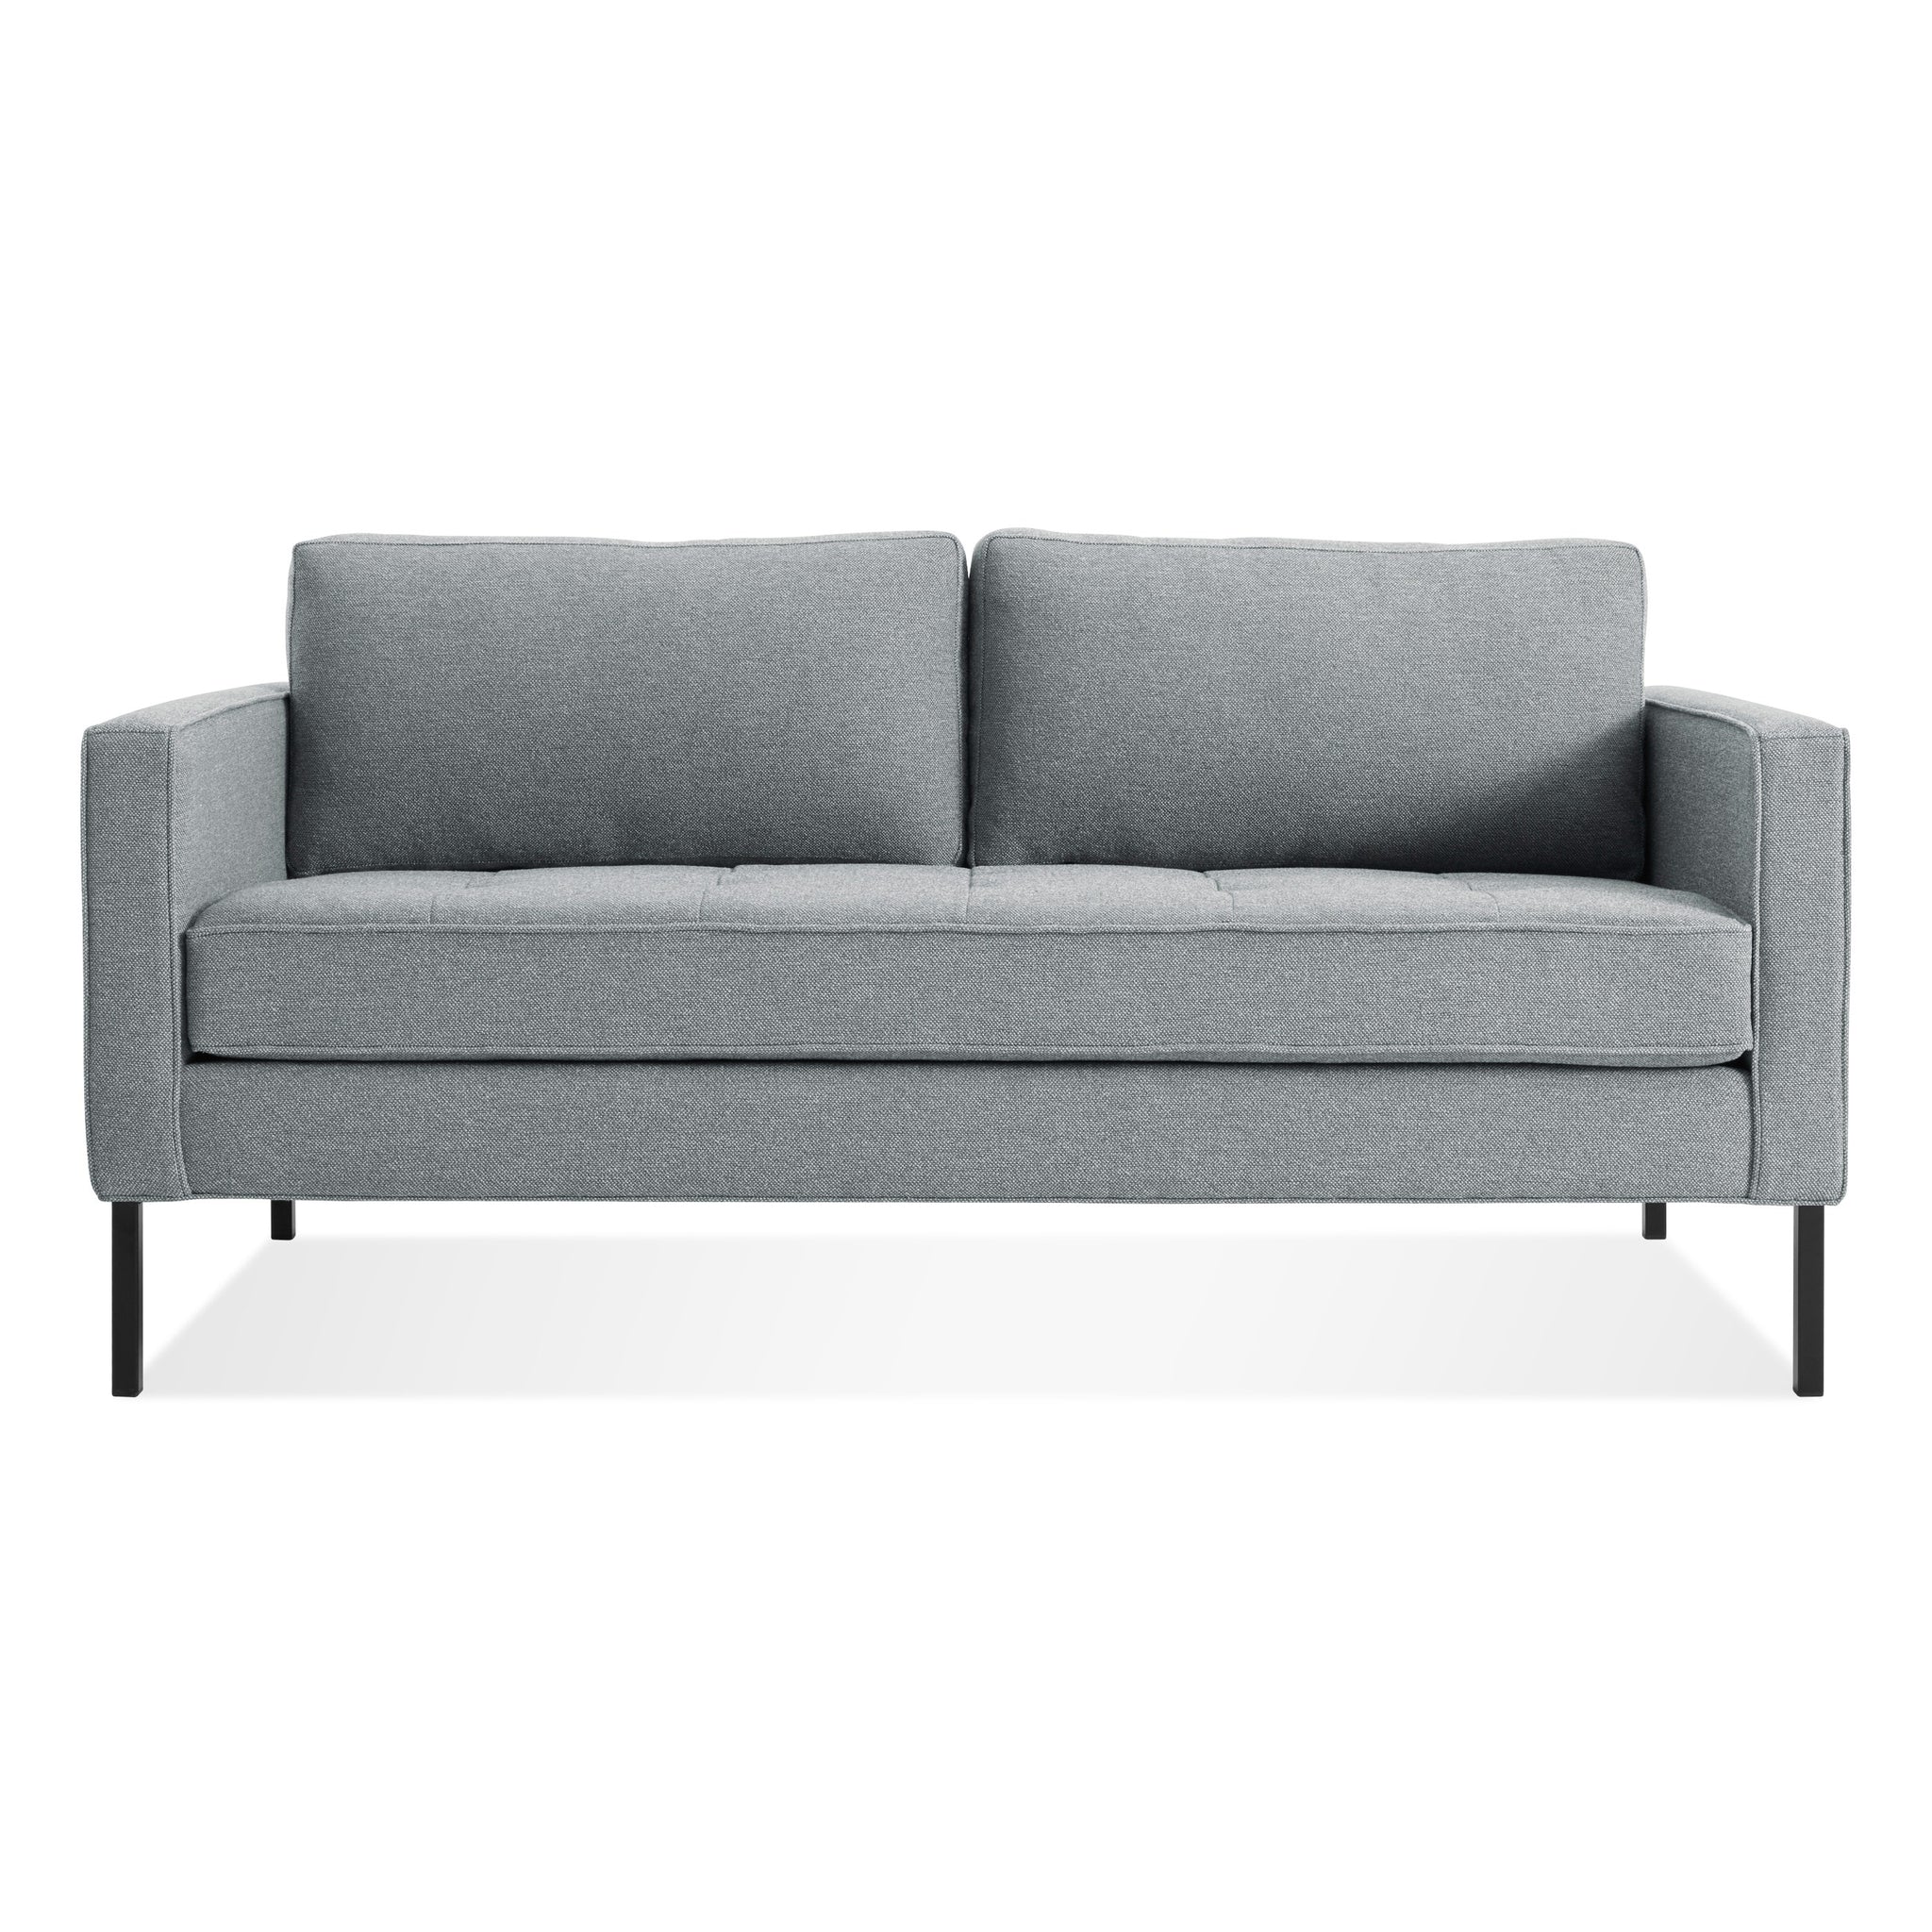 blu dot paramount 66 inch sofa sanford ceramic / metal 